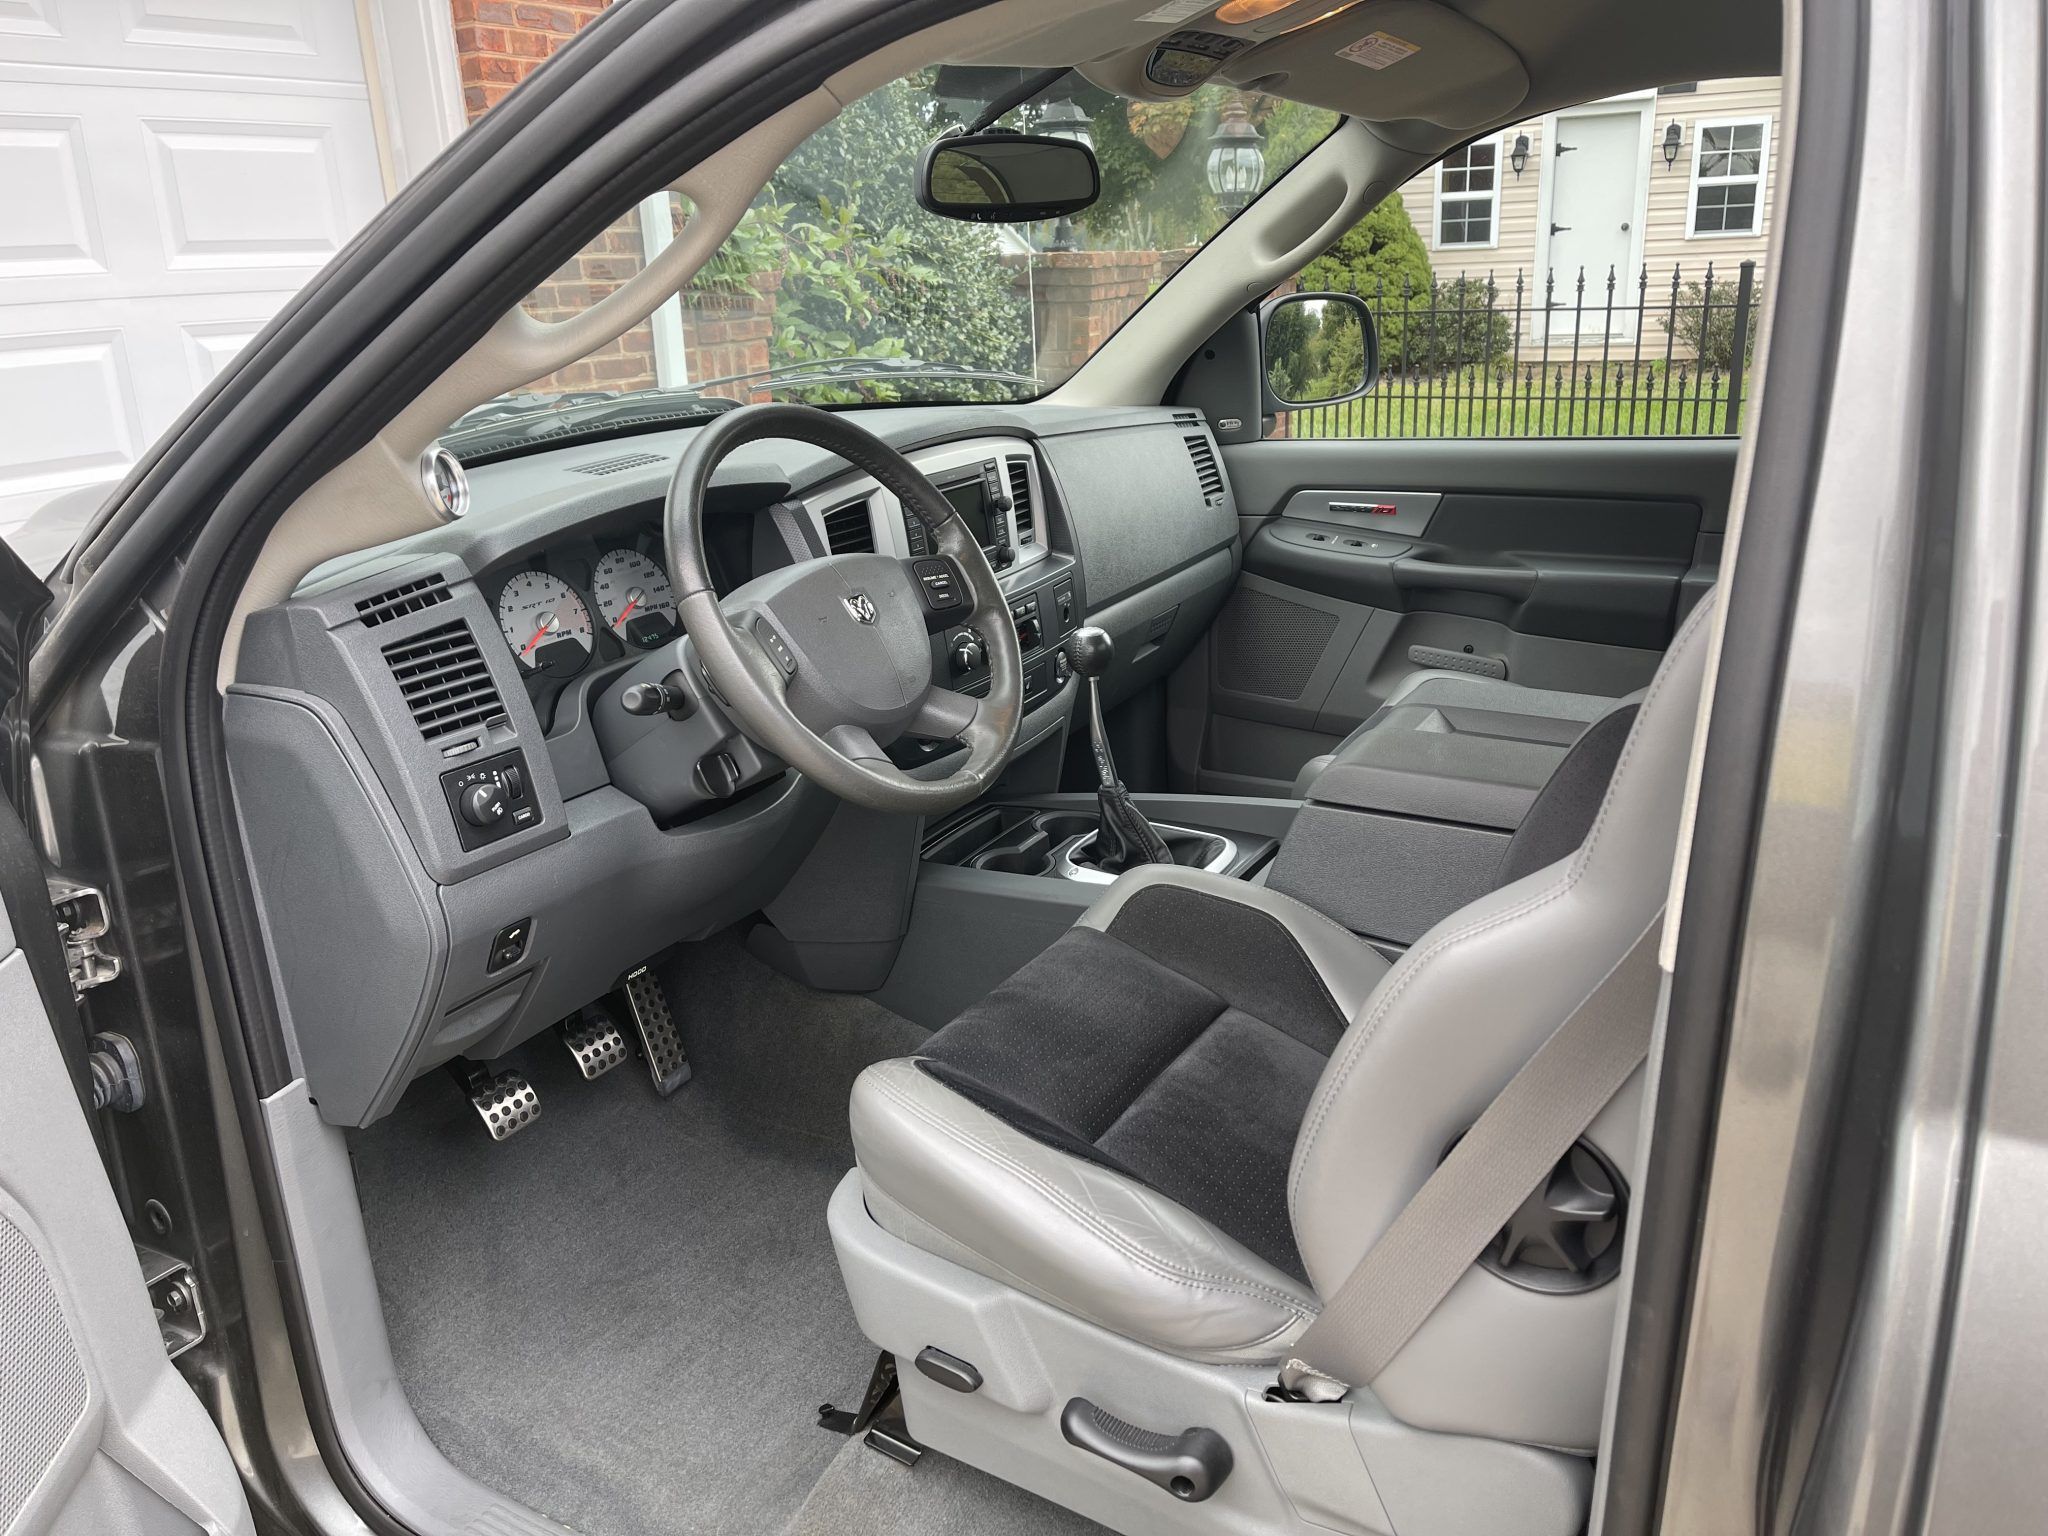 2004-2006 Dodge Ram SRT-10 interior